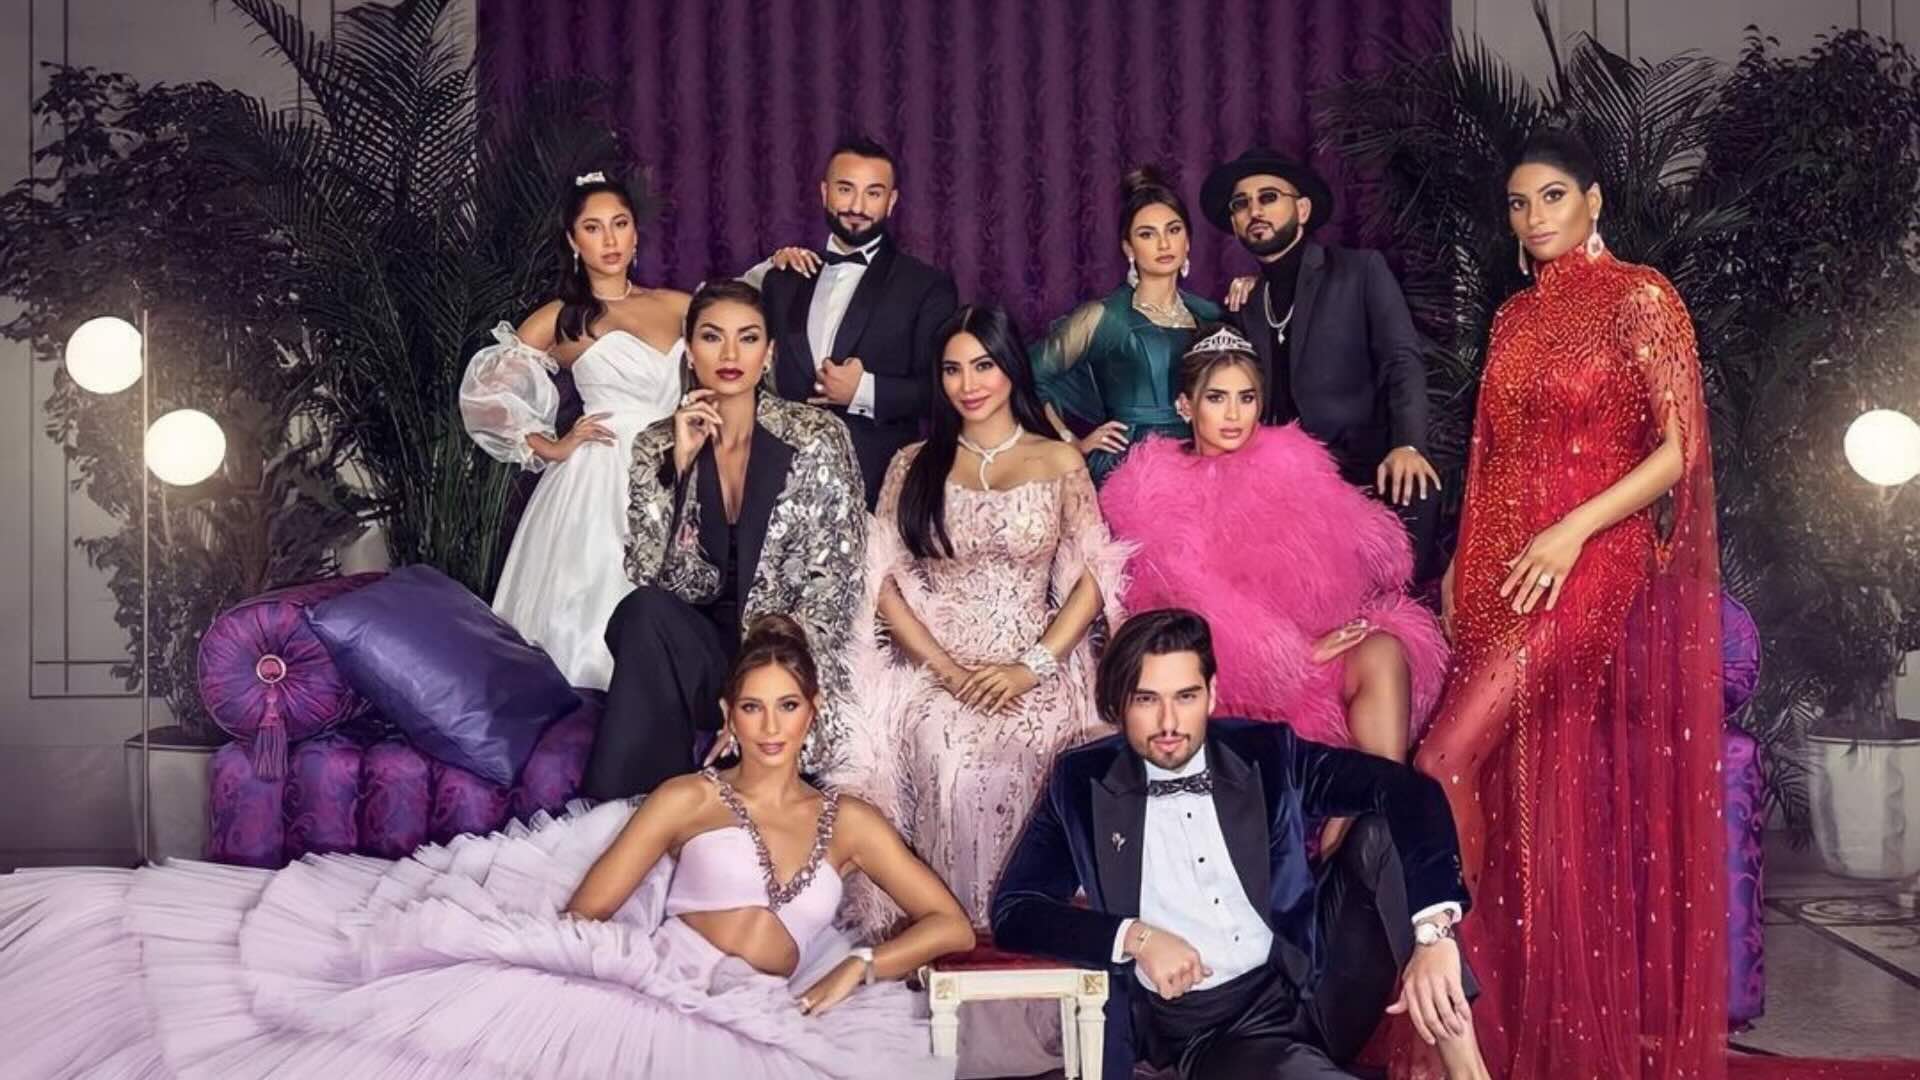 dubai bling saison 2 - Dubai Bling (Saison 2): le luxe et le glamour s'invitent en décembre sur Netflix dans un second volet